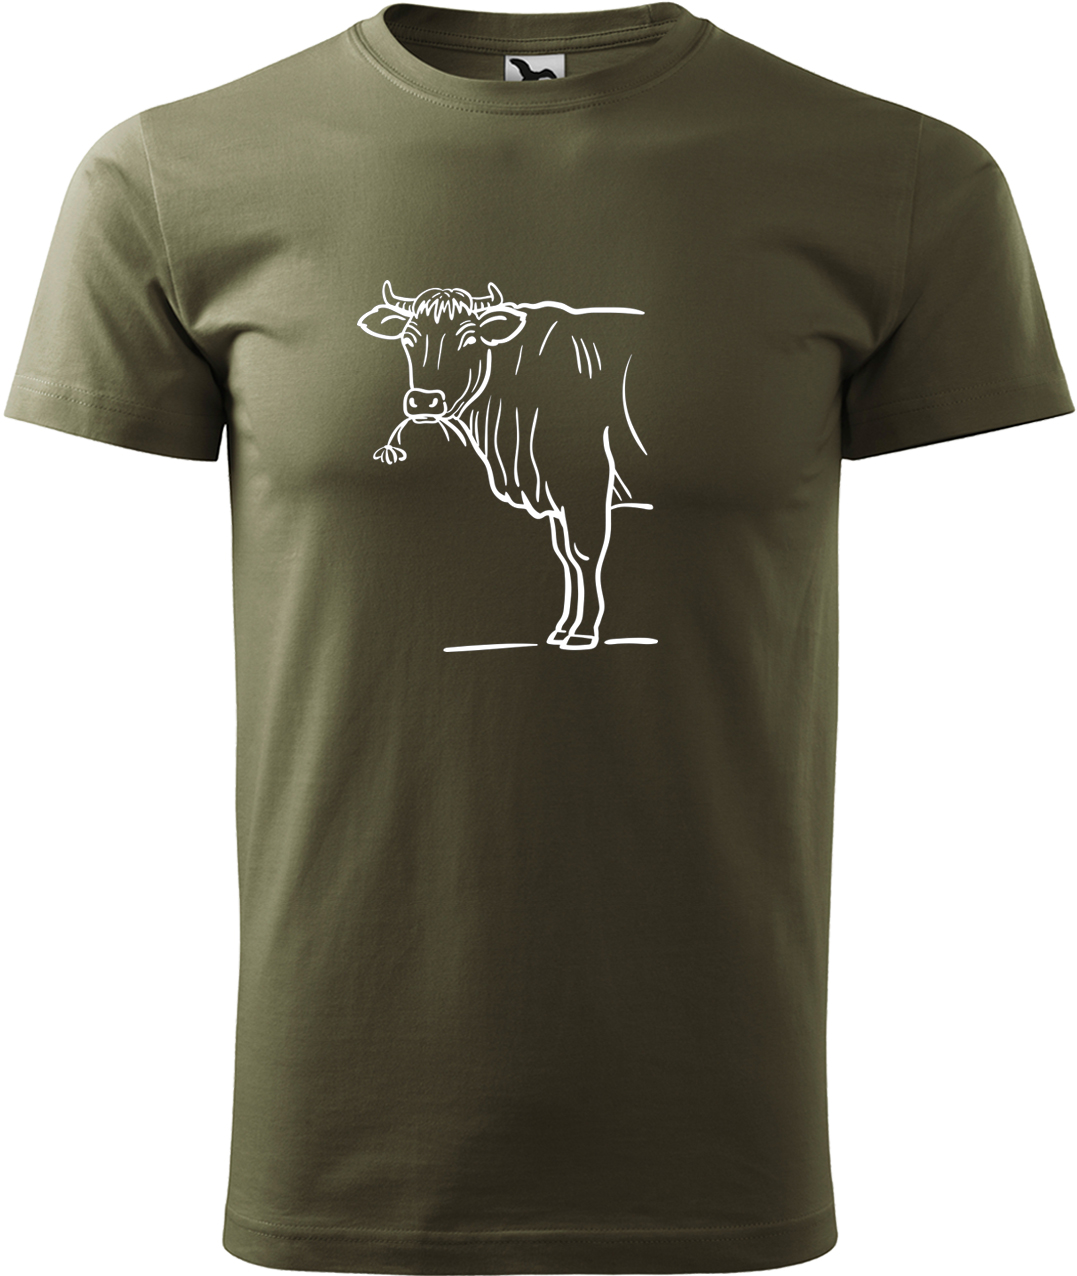 Pánské tričko s krávou - Býk Velikost: S, Barva: Military (69), Střih: pánský